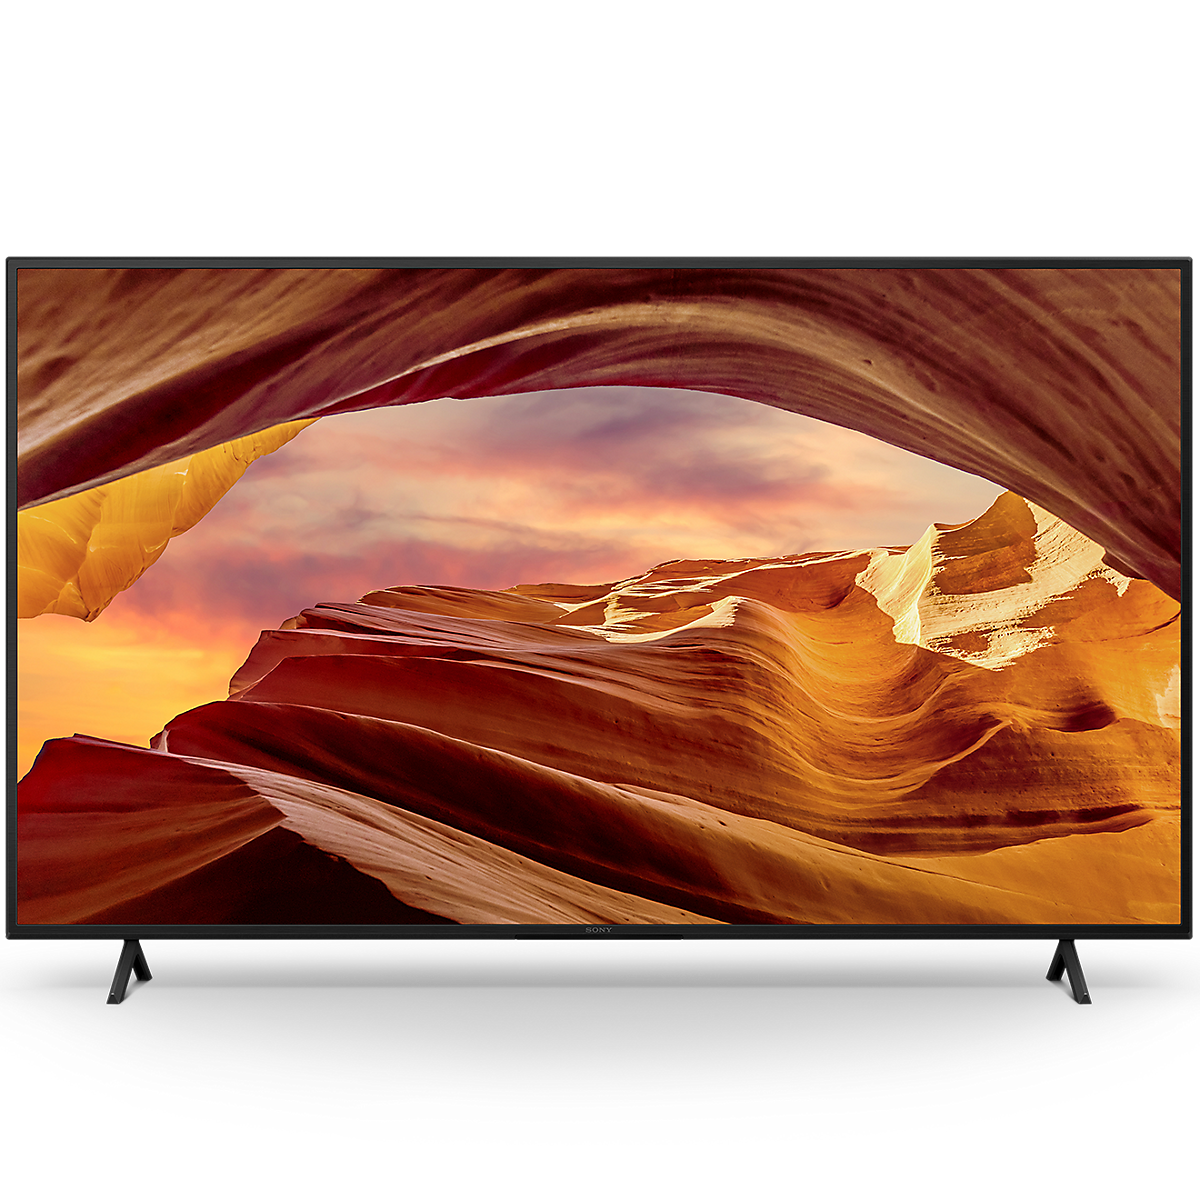 Μπροστινή όψη του X75WL 4K Ultra HD Smart TV (Google TV)